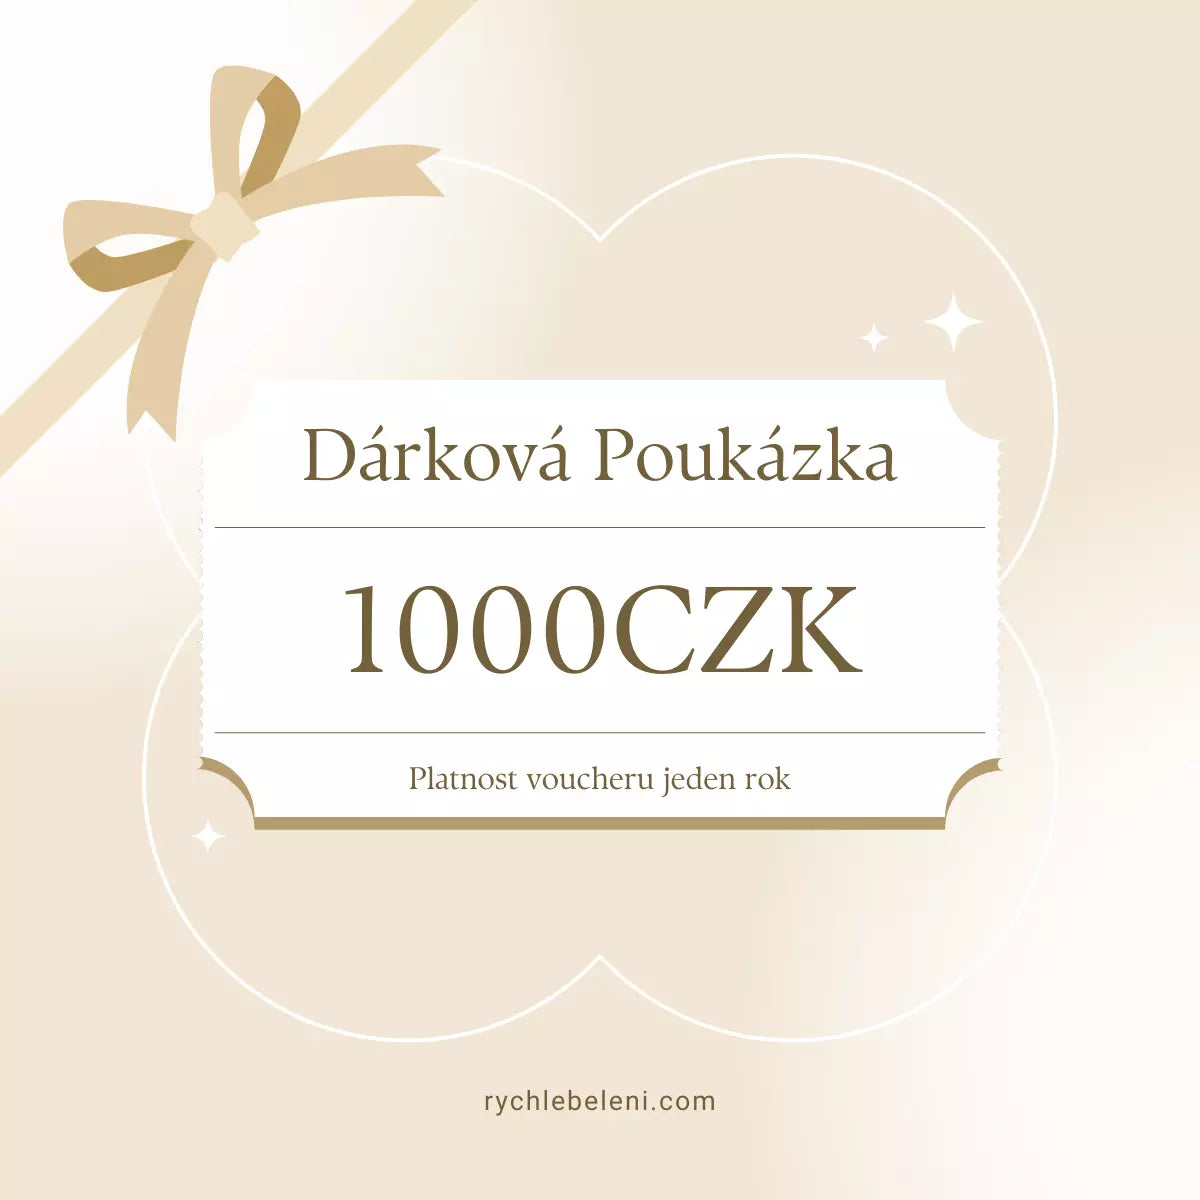 darkova poukazka 1000